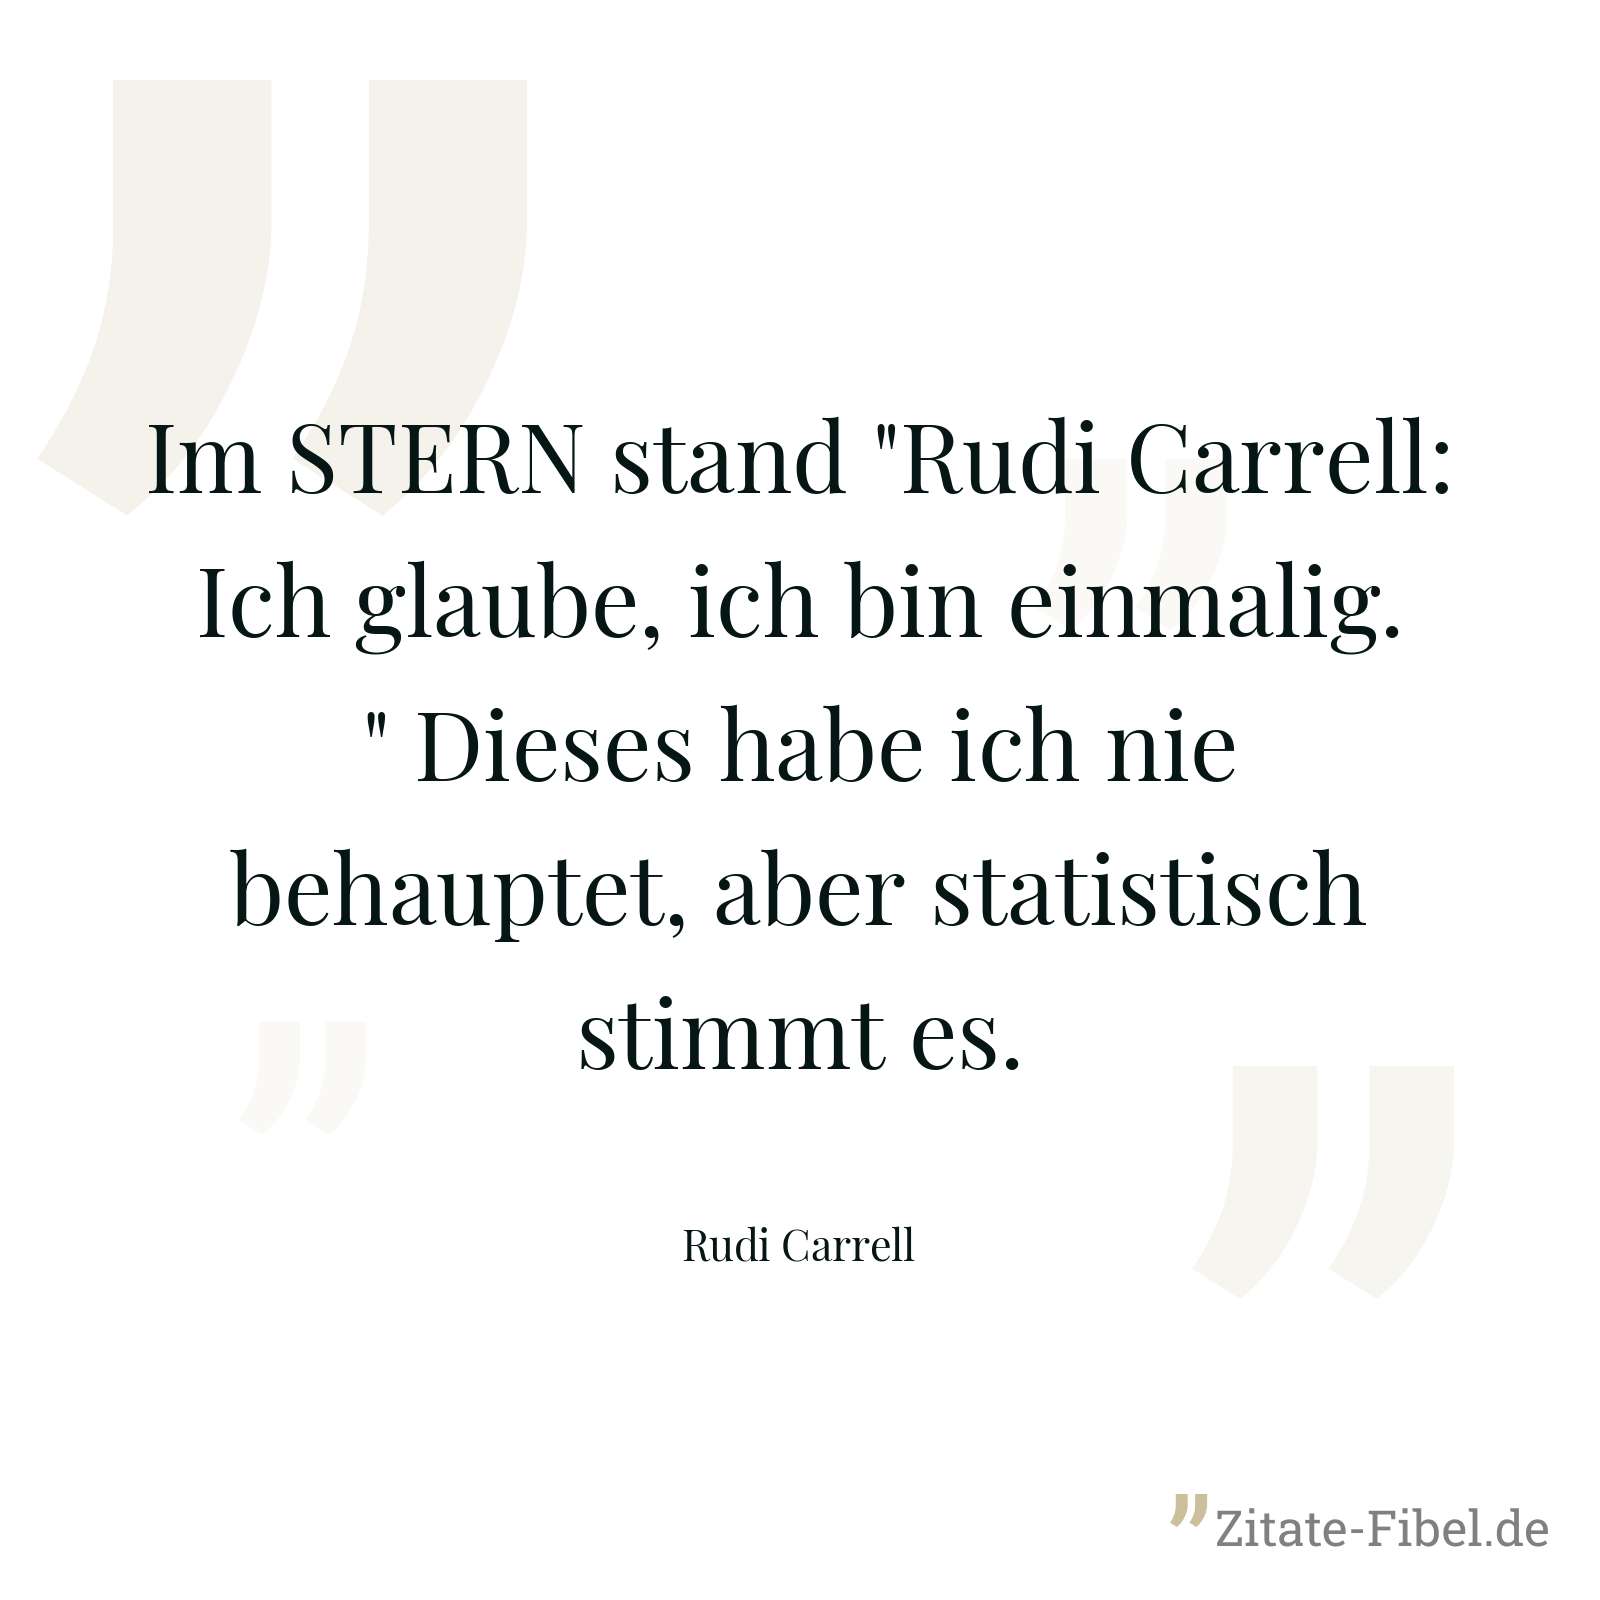 Im STERN stand "Rudi Carrell: Ich glaube, ich bin einmalig." Dieses habe ich nie behauptet, aber statistisch stimmt es. - Rudi Carrell